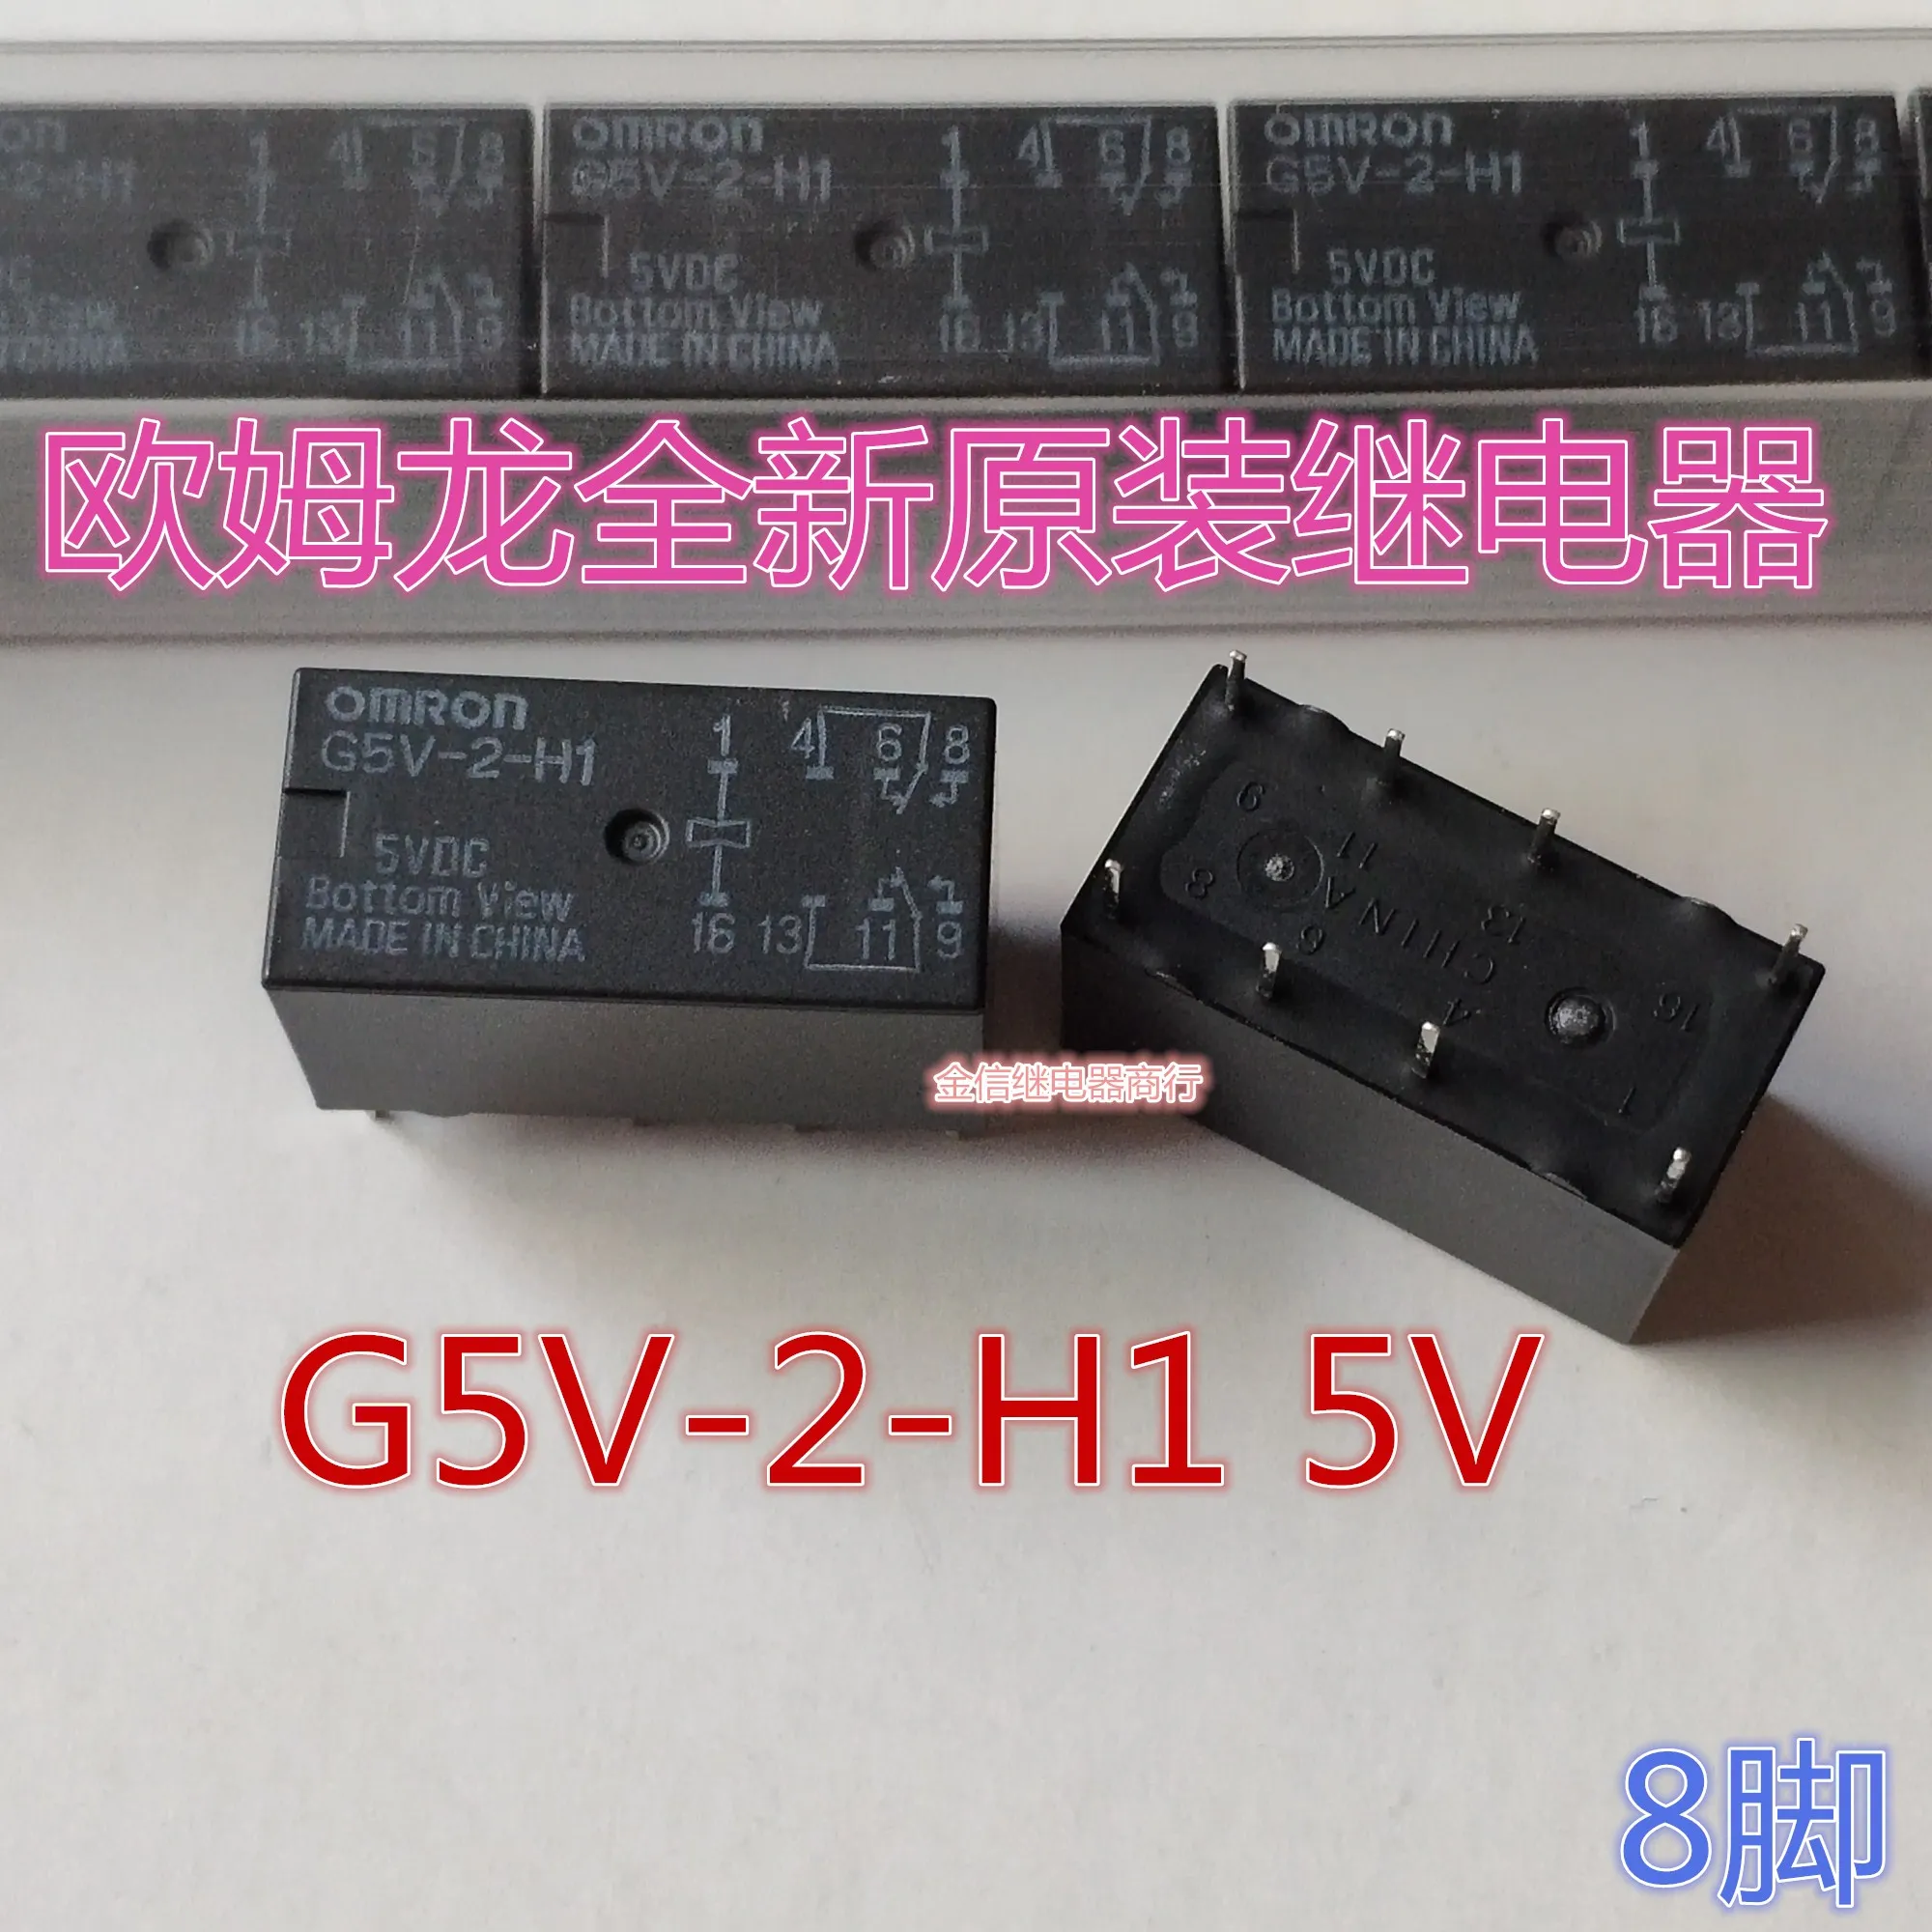 Бесплатная доставка G5V-2-H1 5V 12V 10ШТ, как показано на рисунке